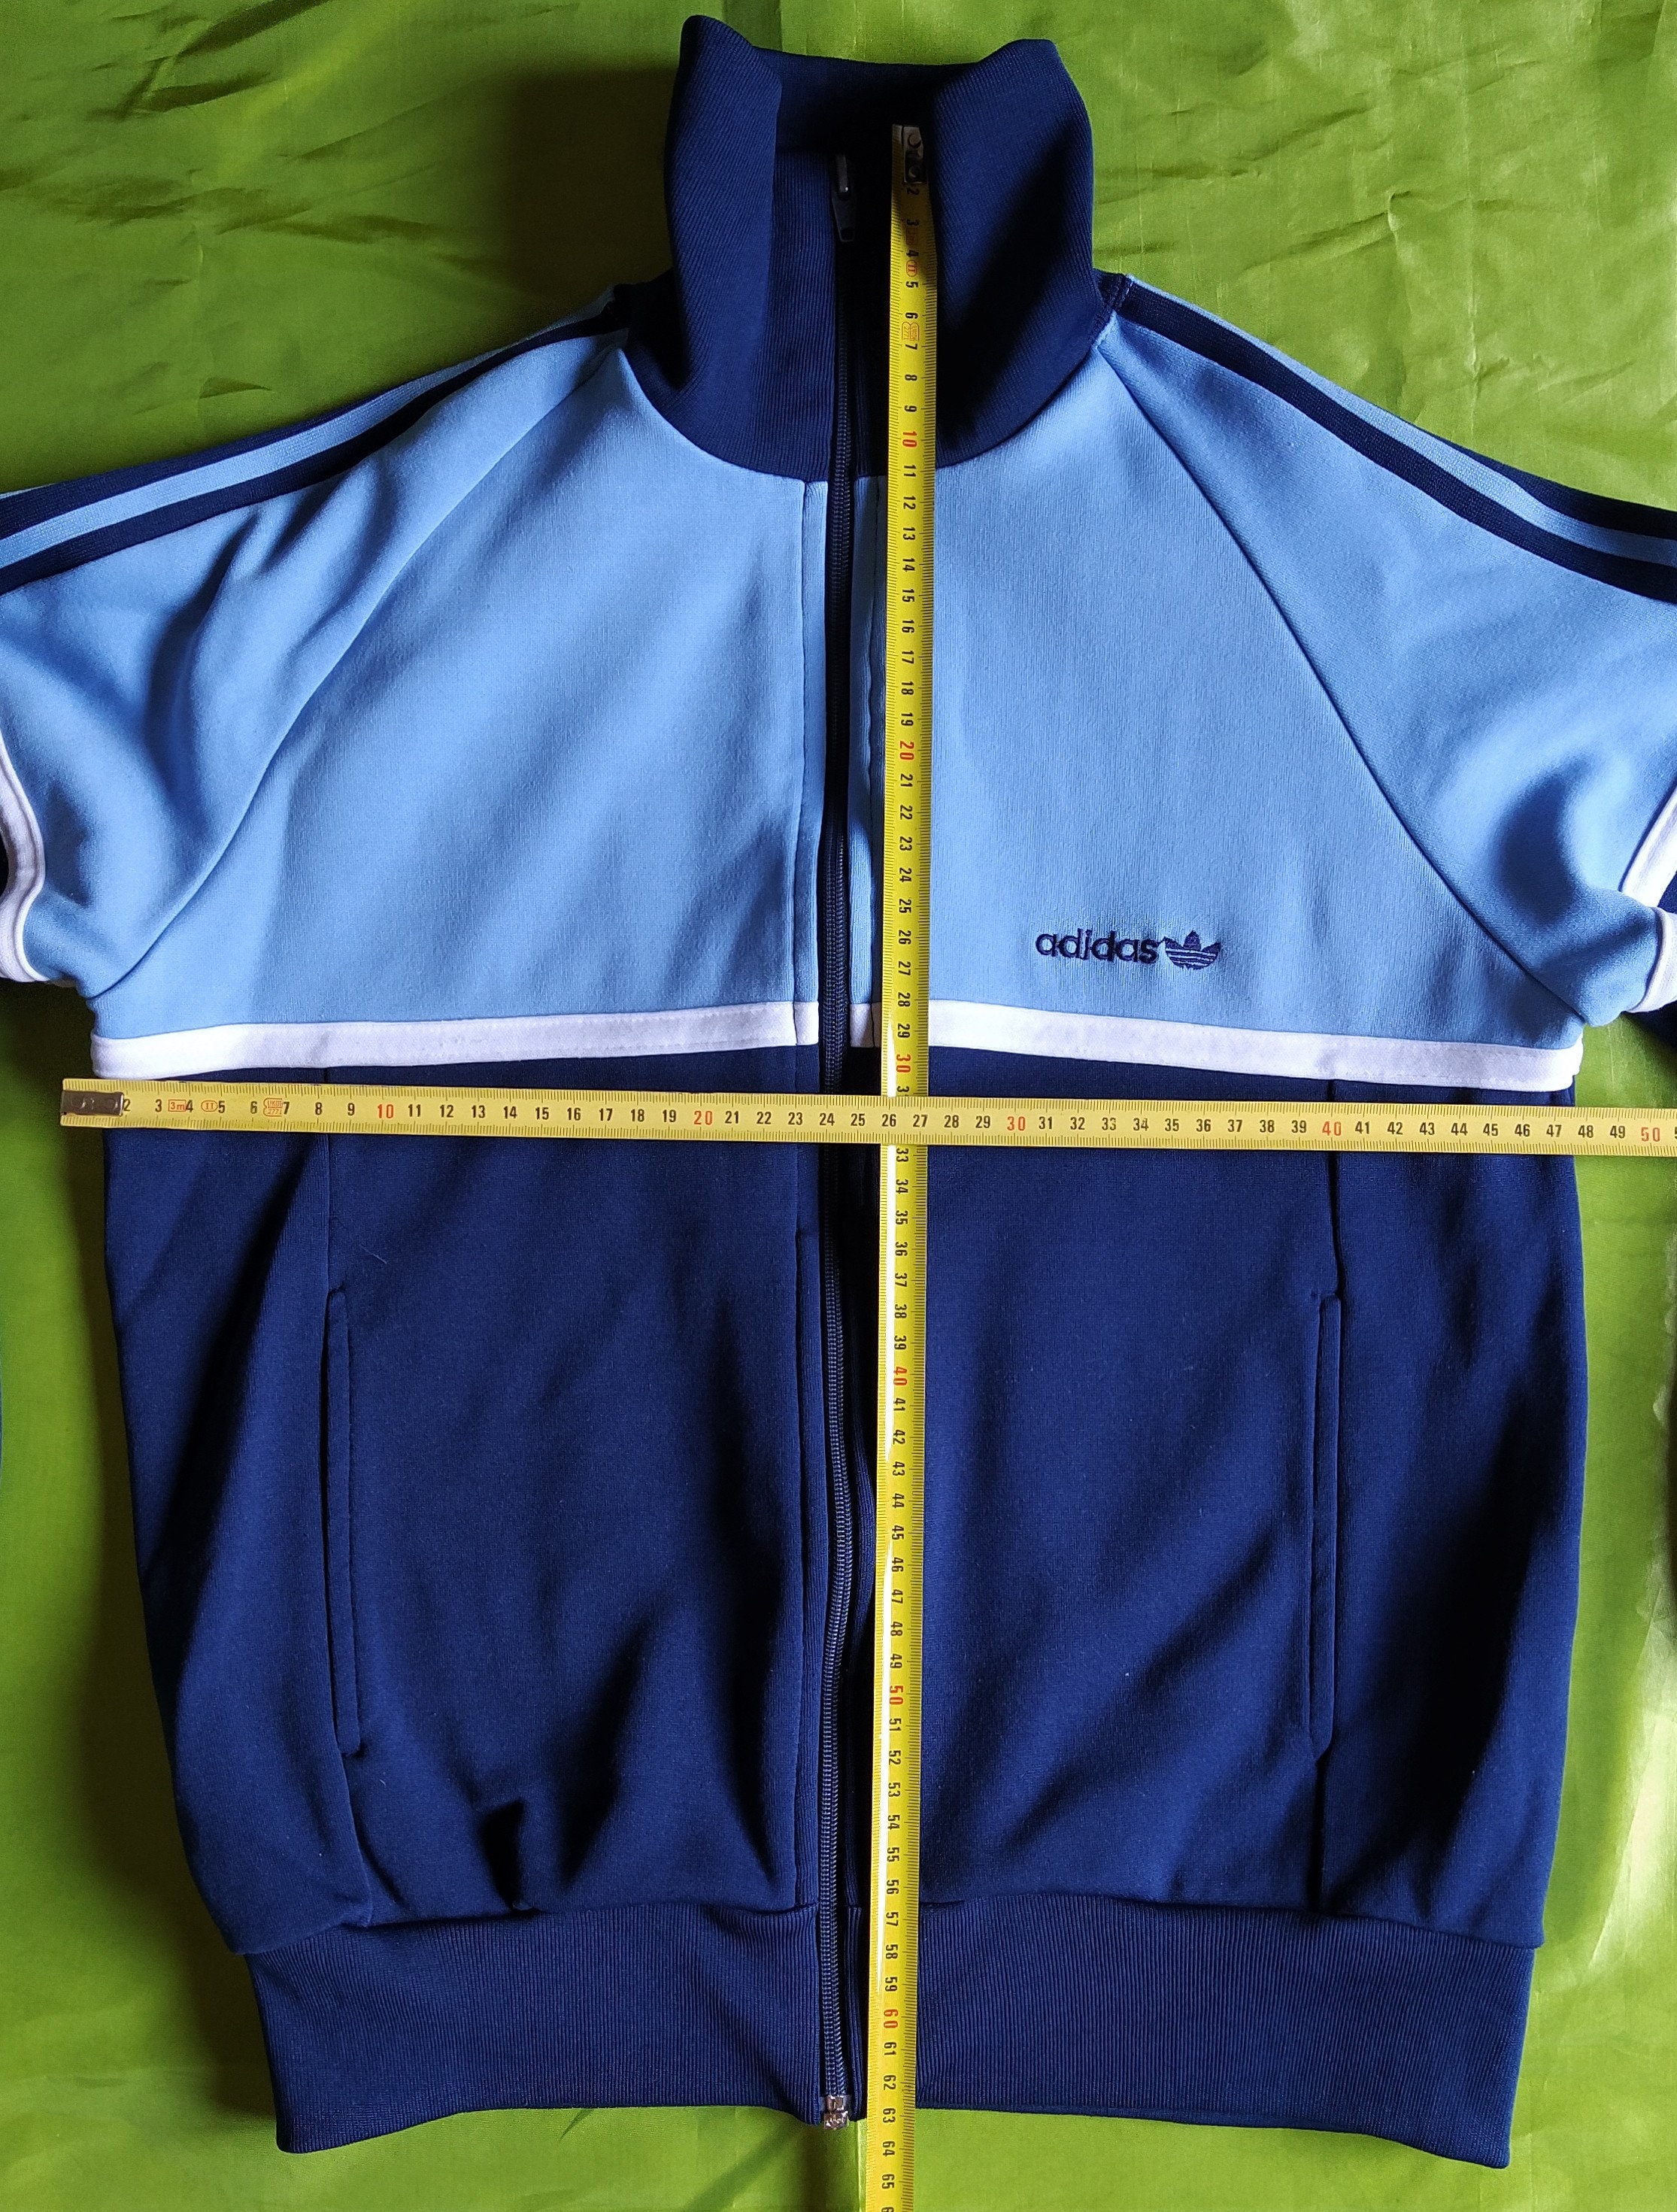 Adidas Originals Made in Korea Vintage 80s Jacket Track Top Navy